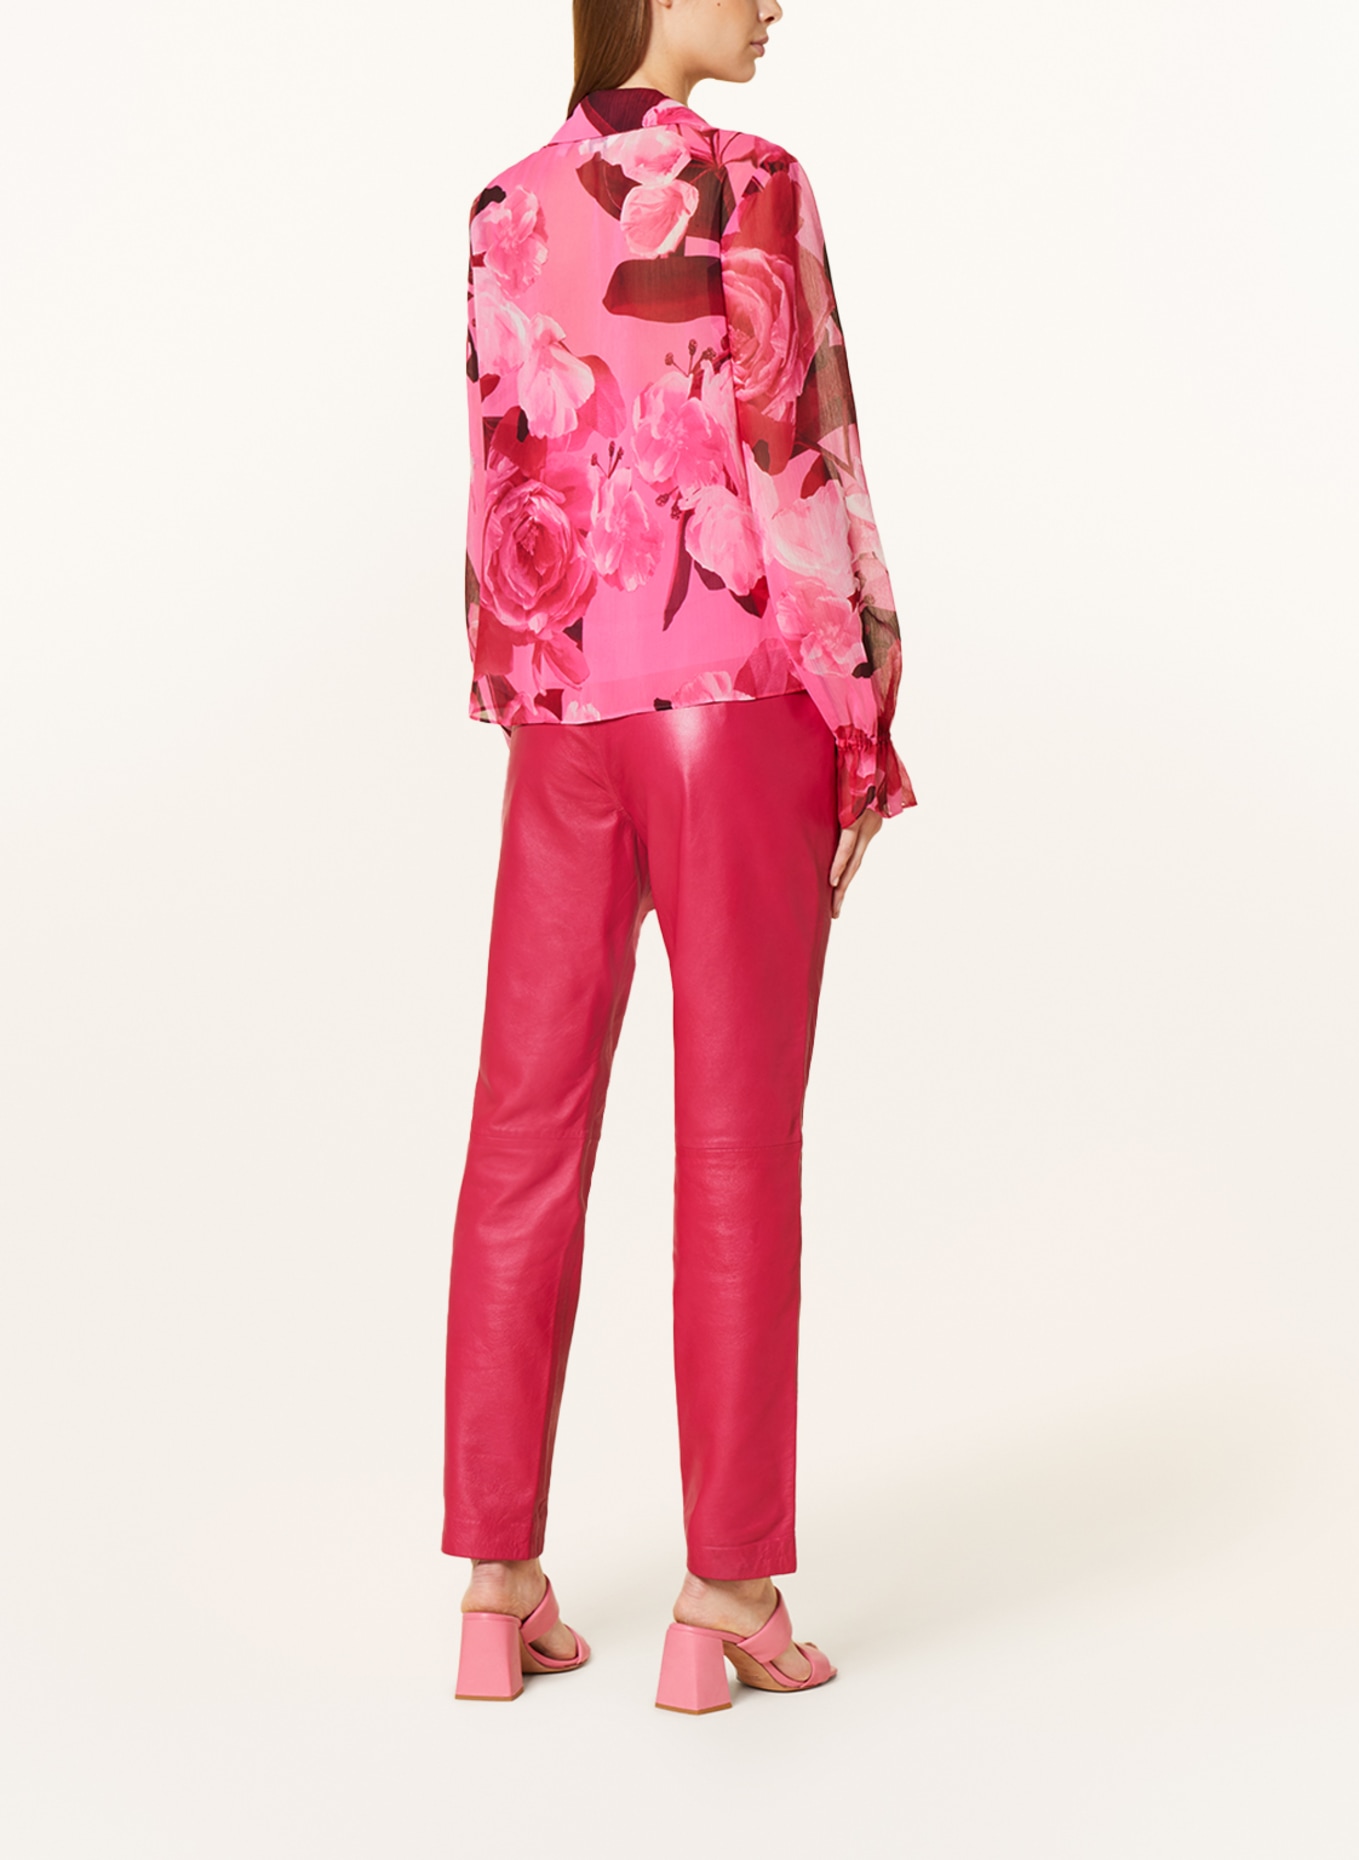 TED BAKER Blusenshirt LUUCIIE mit Schmucksteinen und Volants in pink/  dunkelrot/ rosa